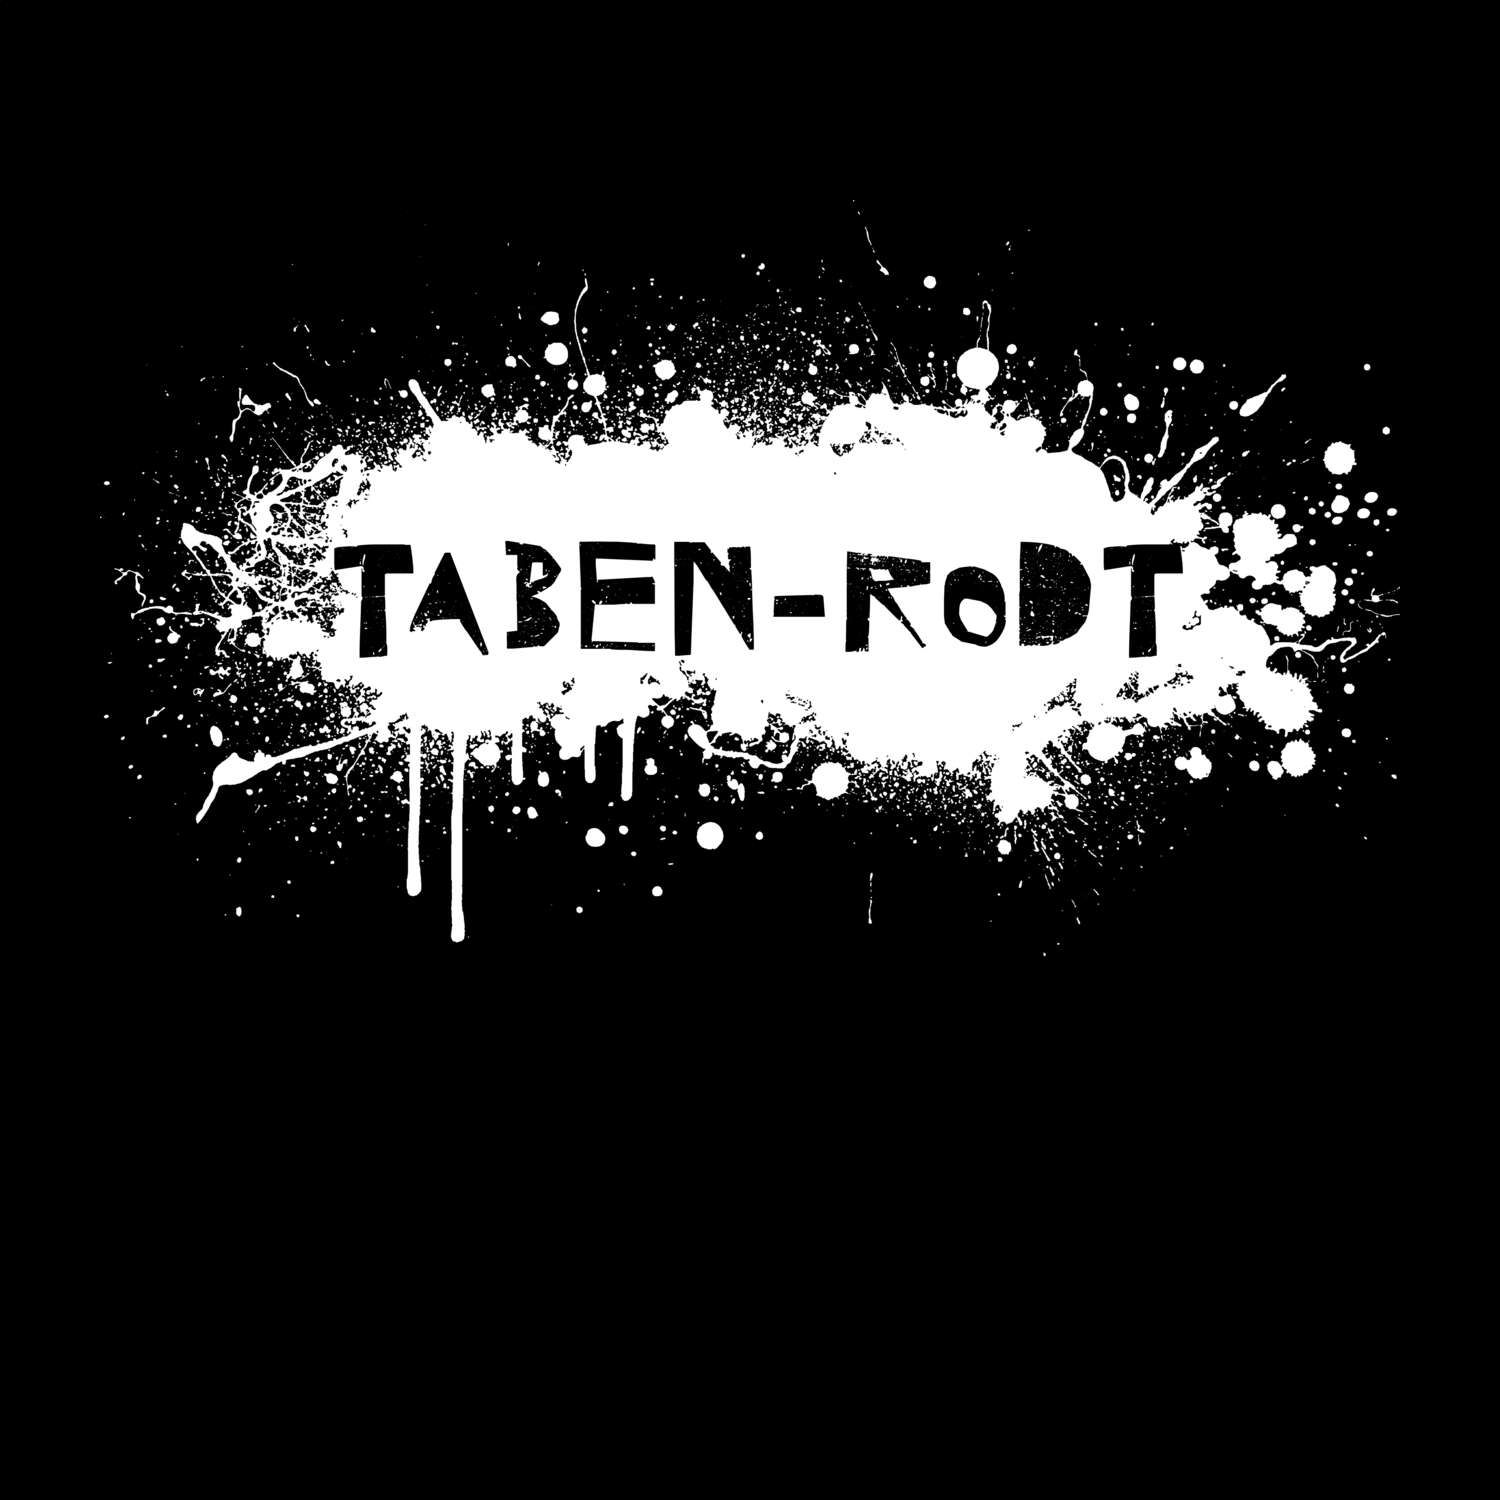 Taben-Rodt T-Shirt »Paint Splash Punk«